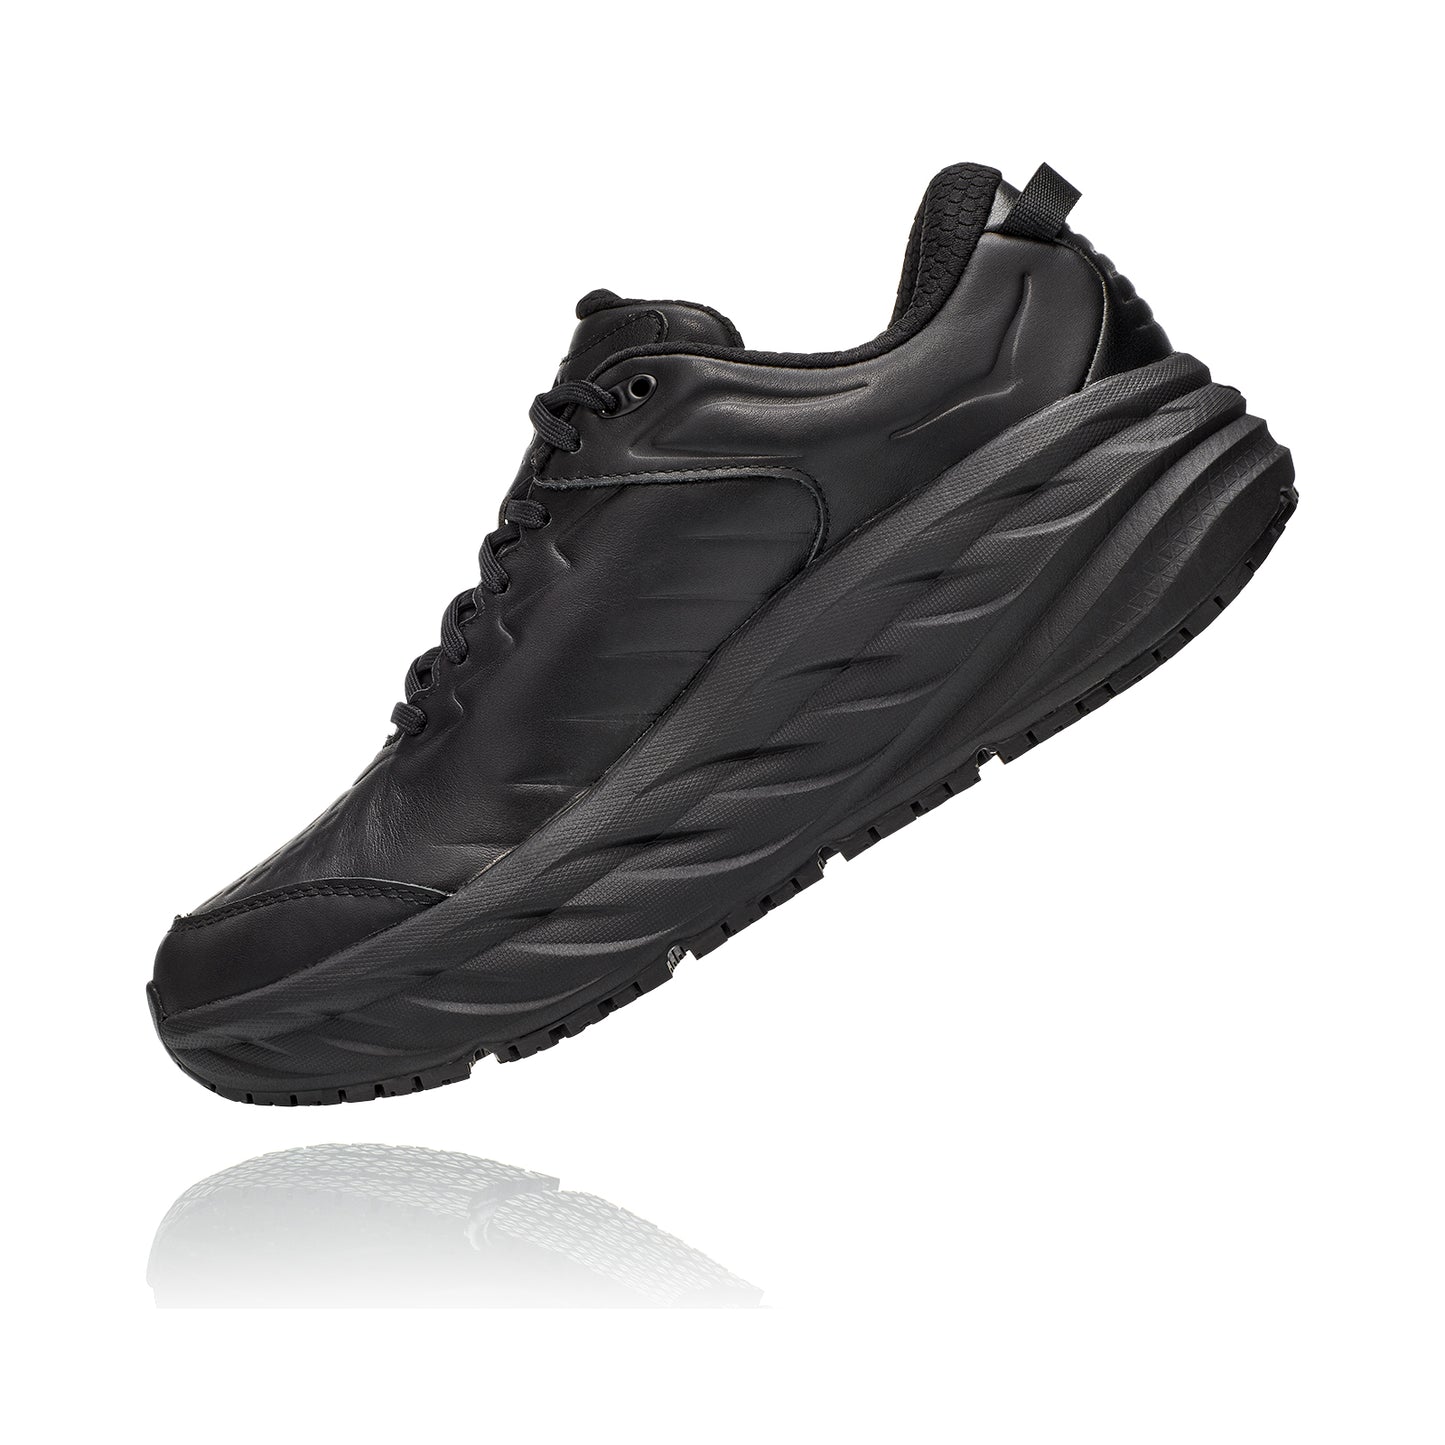 Men's Bondi SR Running Shoe - Black/Black - Regular (D)